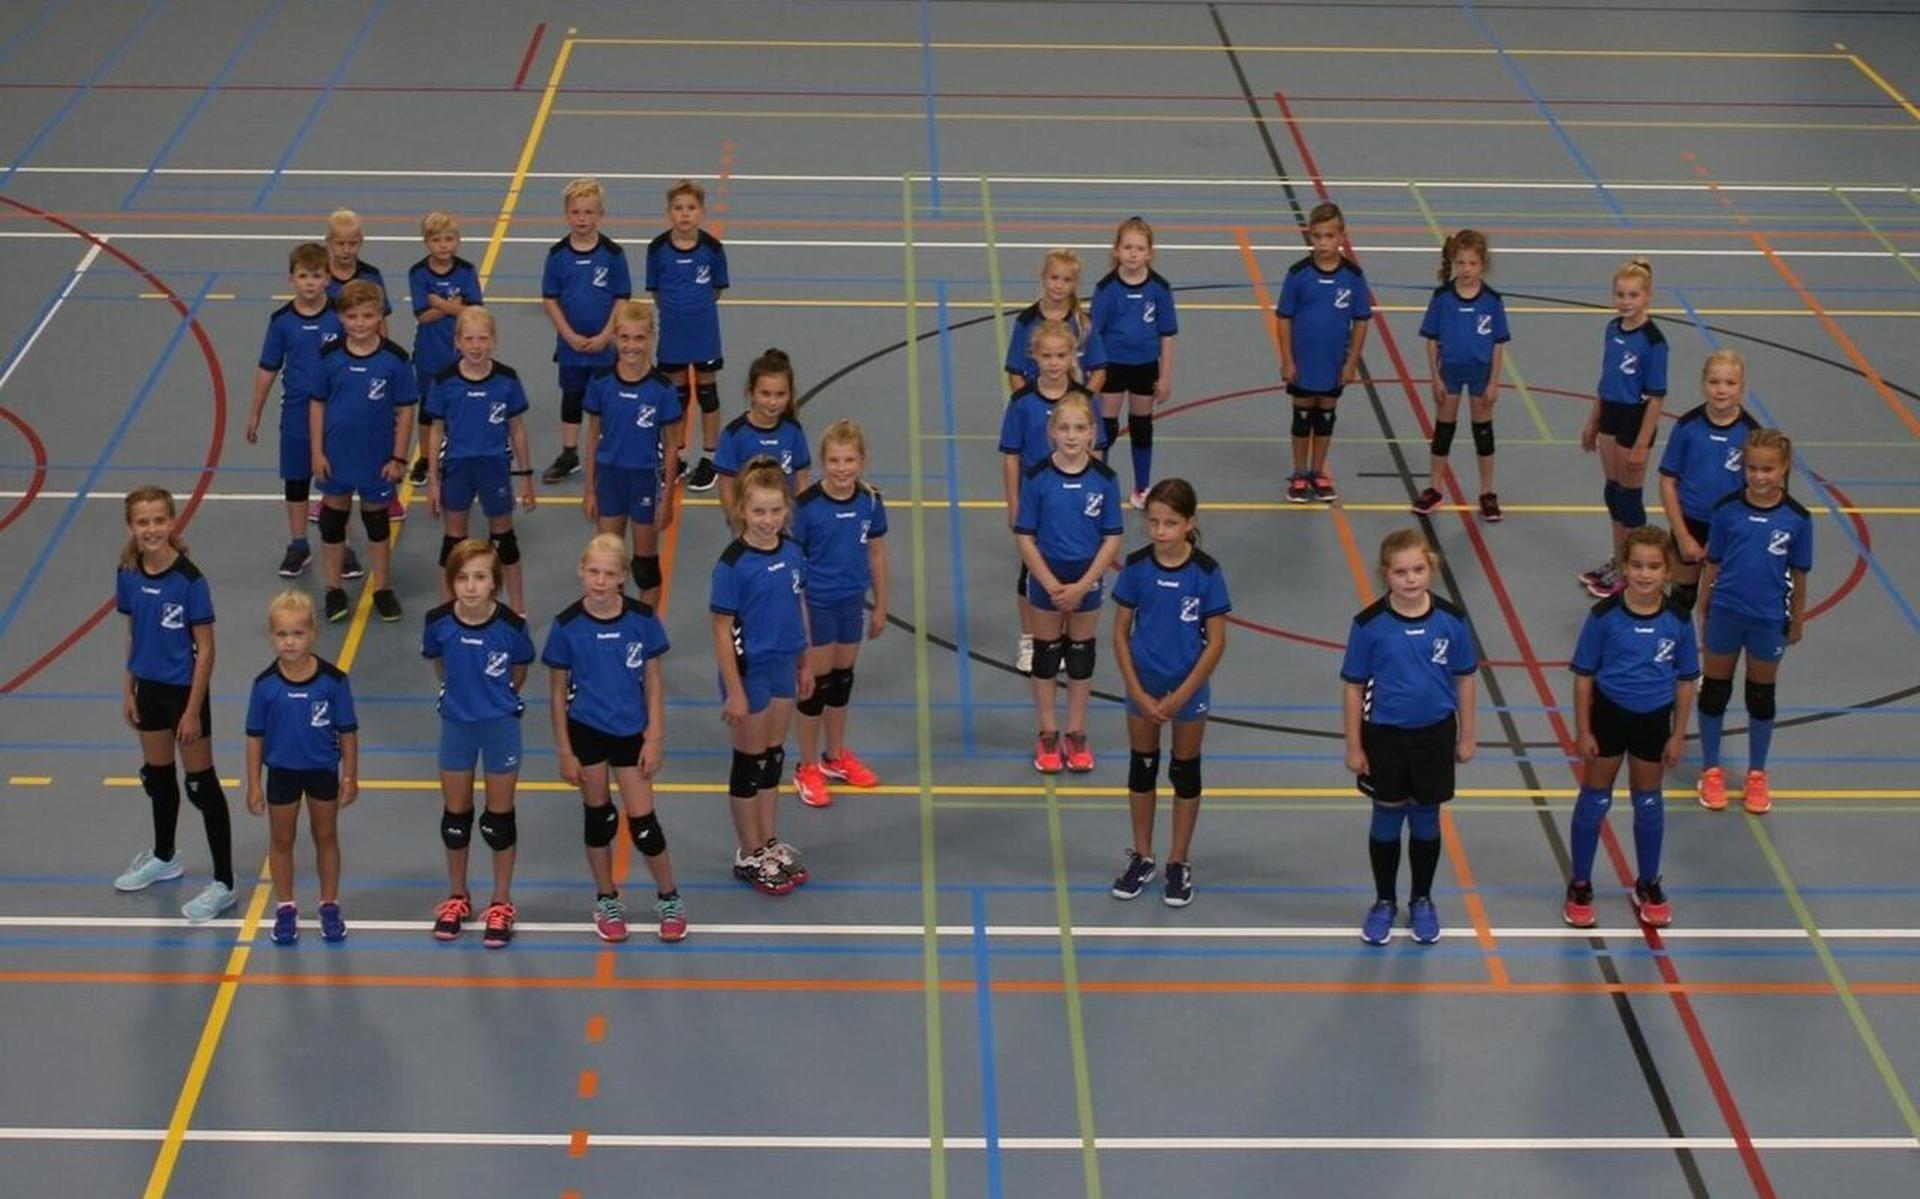 De nieuwe shirts worden uitgereikt aan de jongste volleyballers, die daarmee het getal 50 op de vloer vormen.